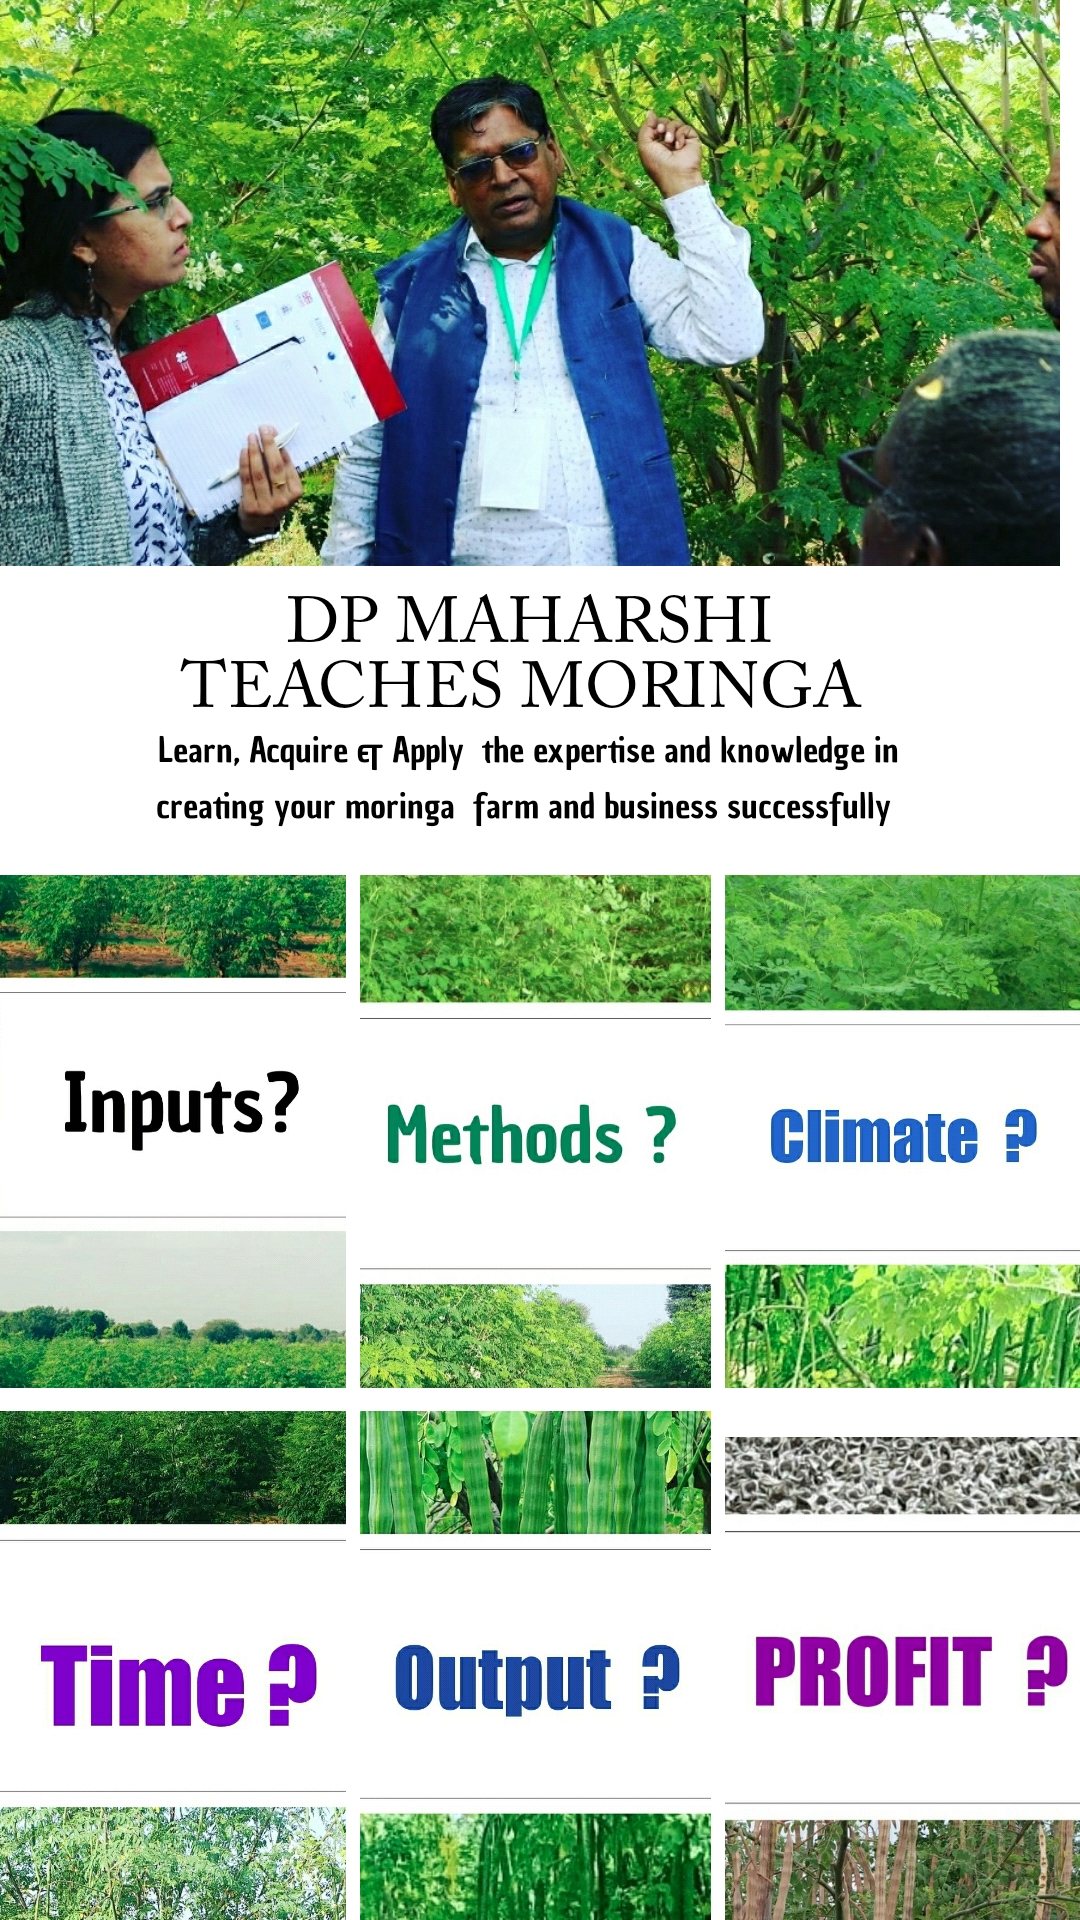 dp maharshi teaches Moringa